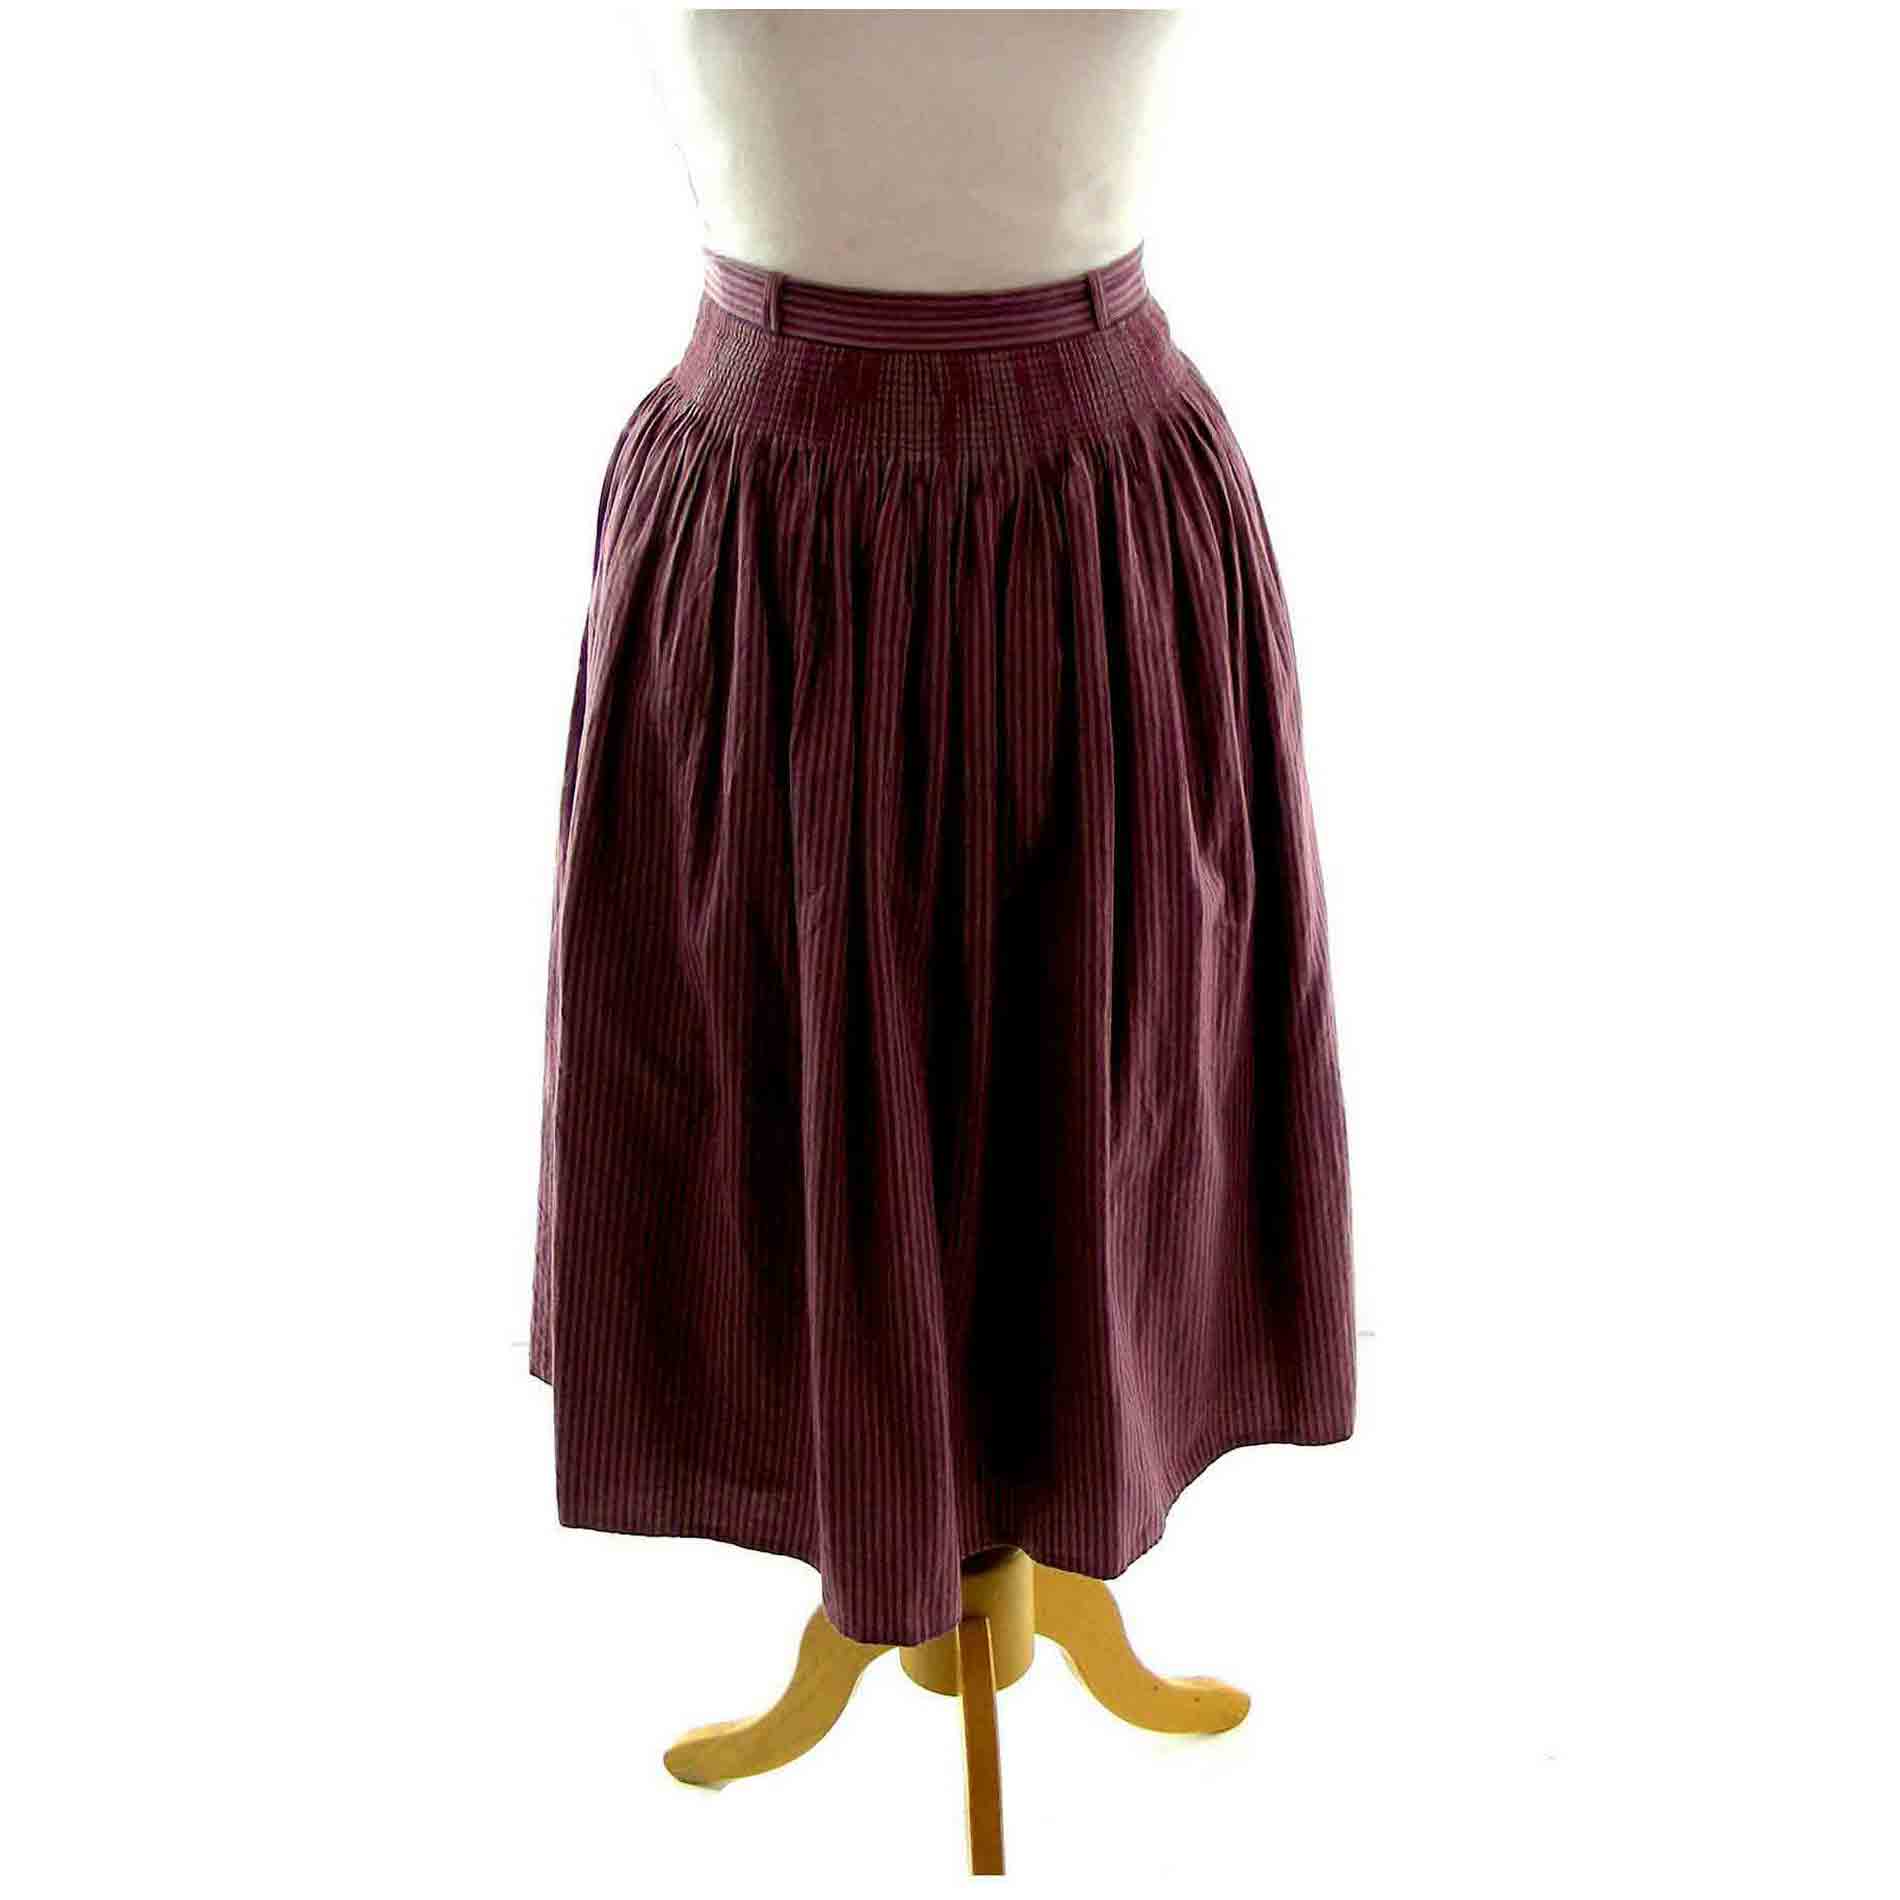 Plum Dirndl Skirt UK Size 6- Blue 17 Vintage Clothing